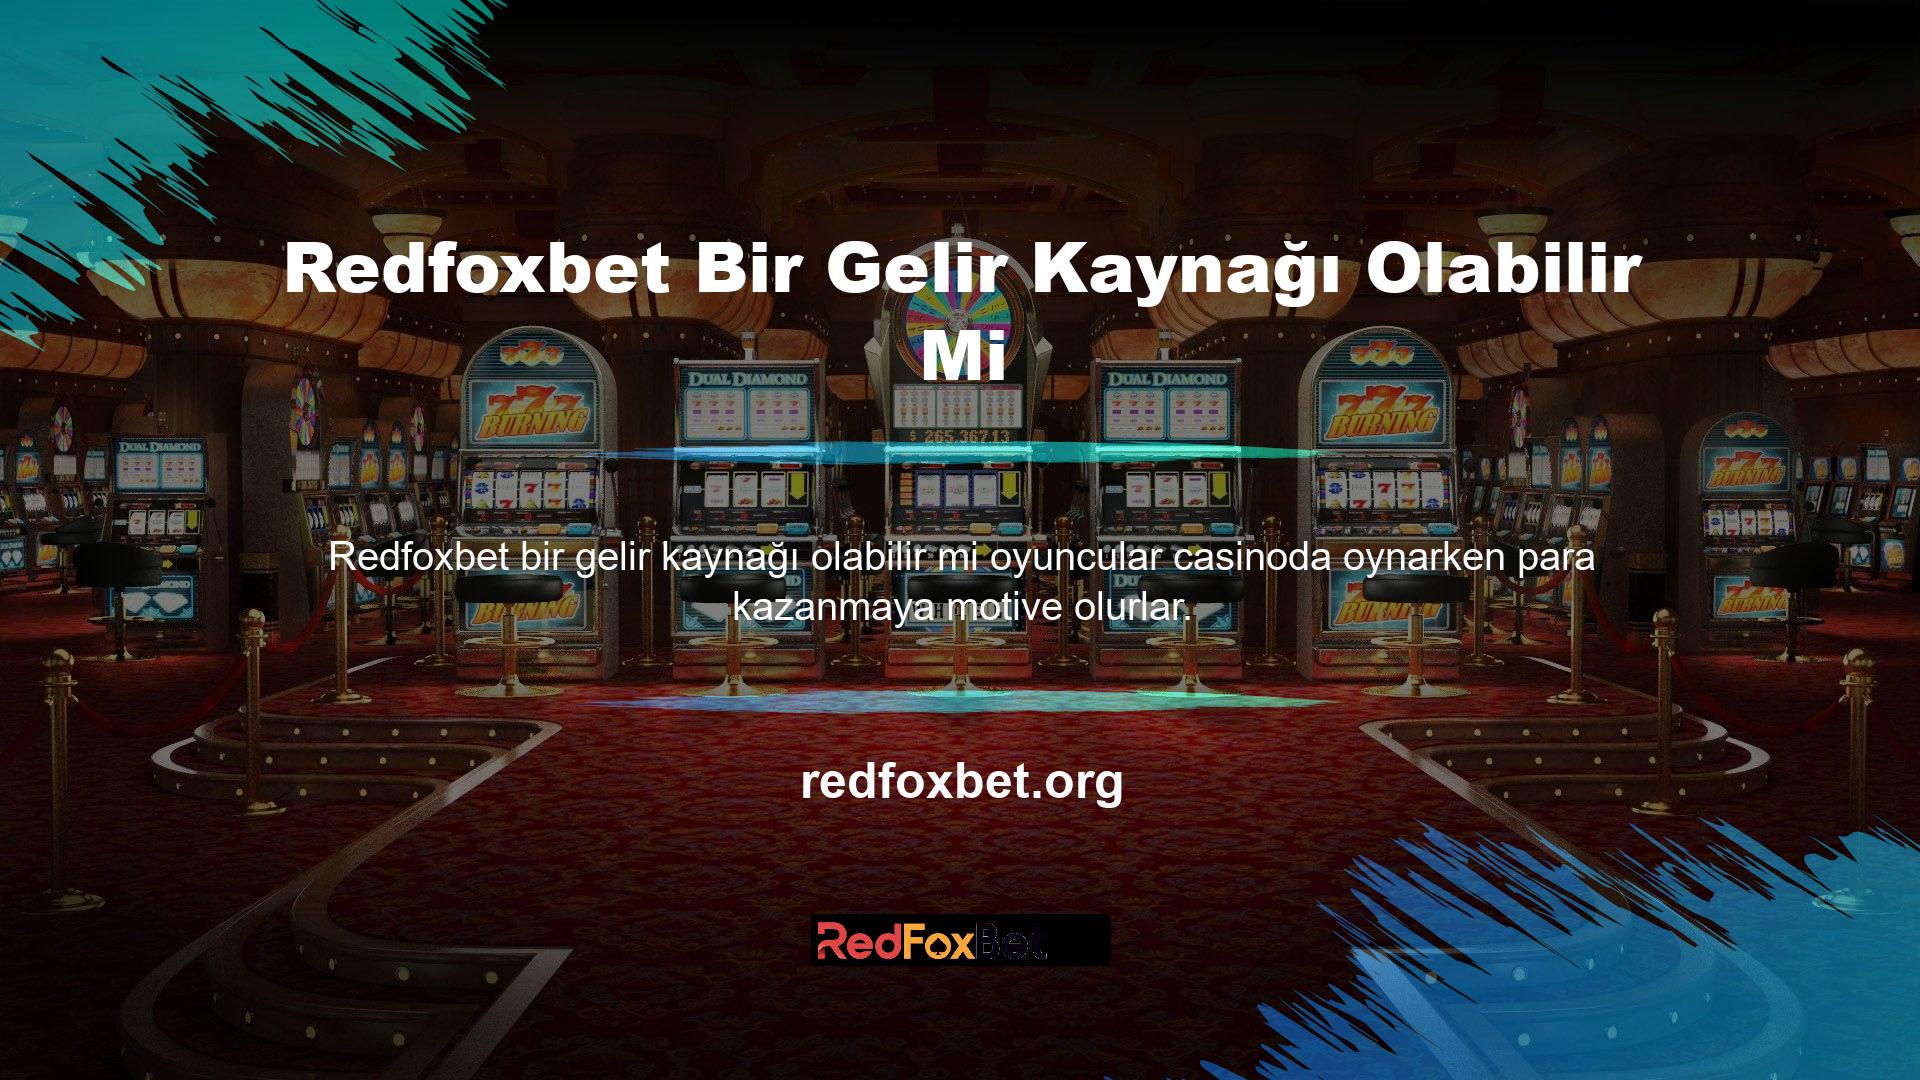 Redfoxbet sitesinde casino oyunlarının bulunması nedeniyle oyuncular bunlardan para kazanma konusunda isteklidir